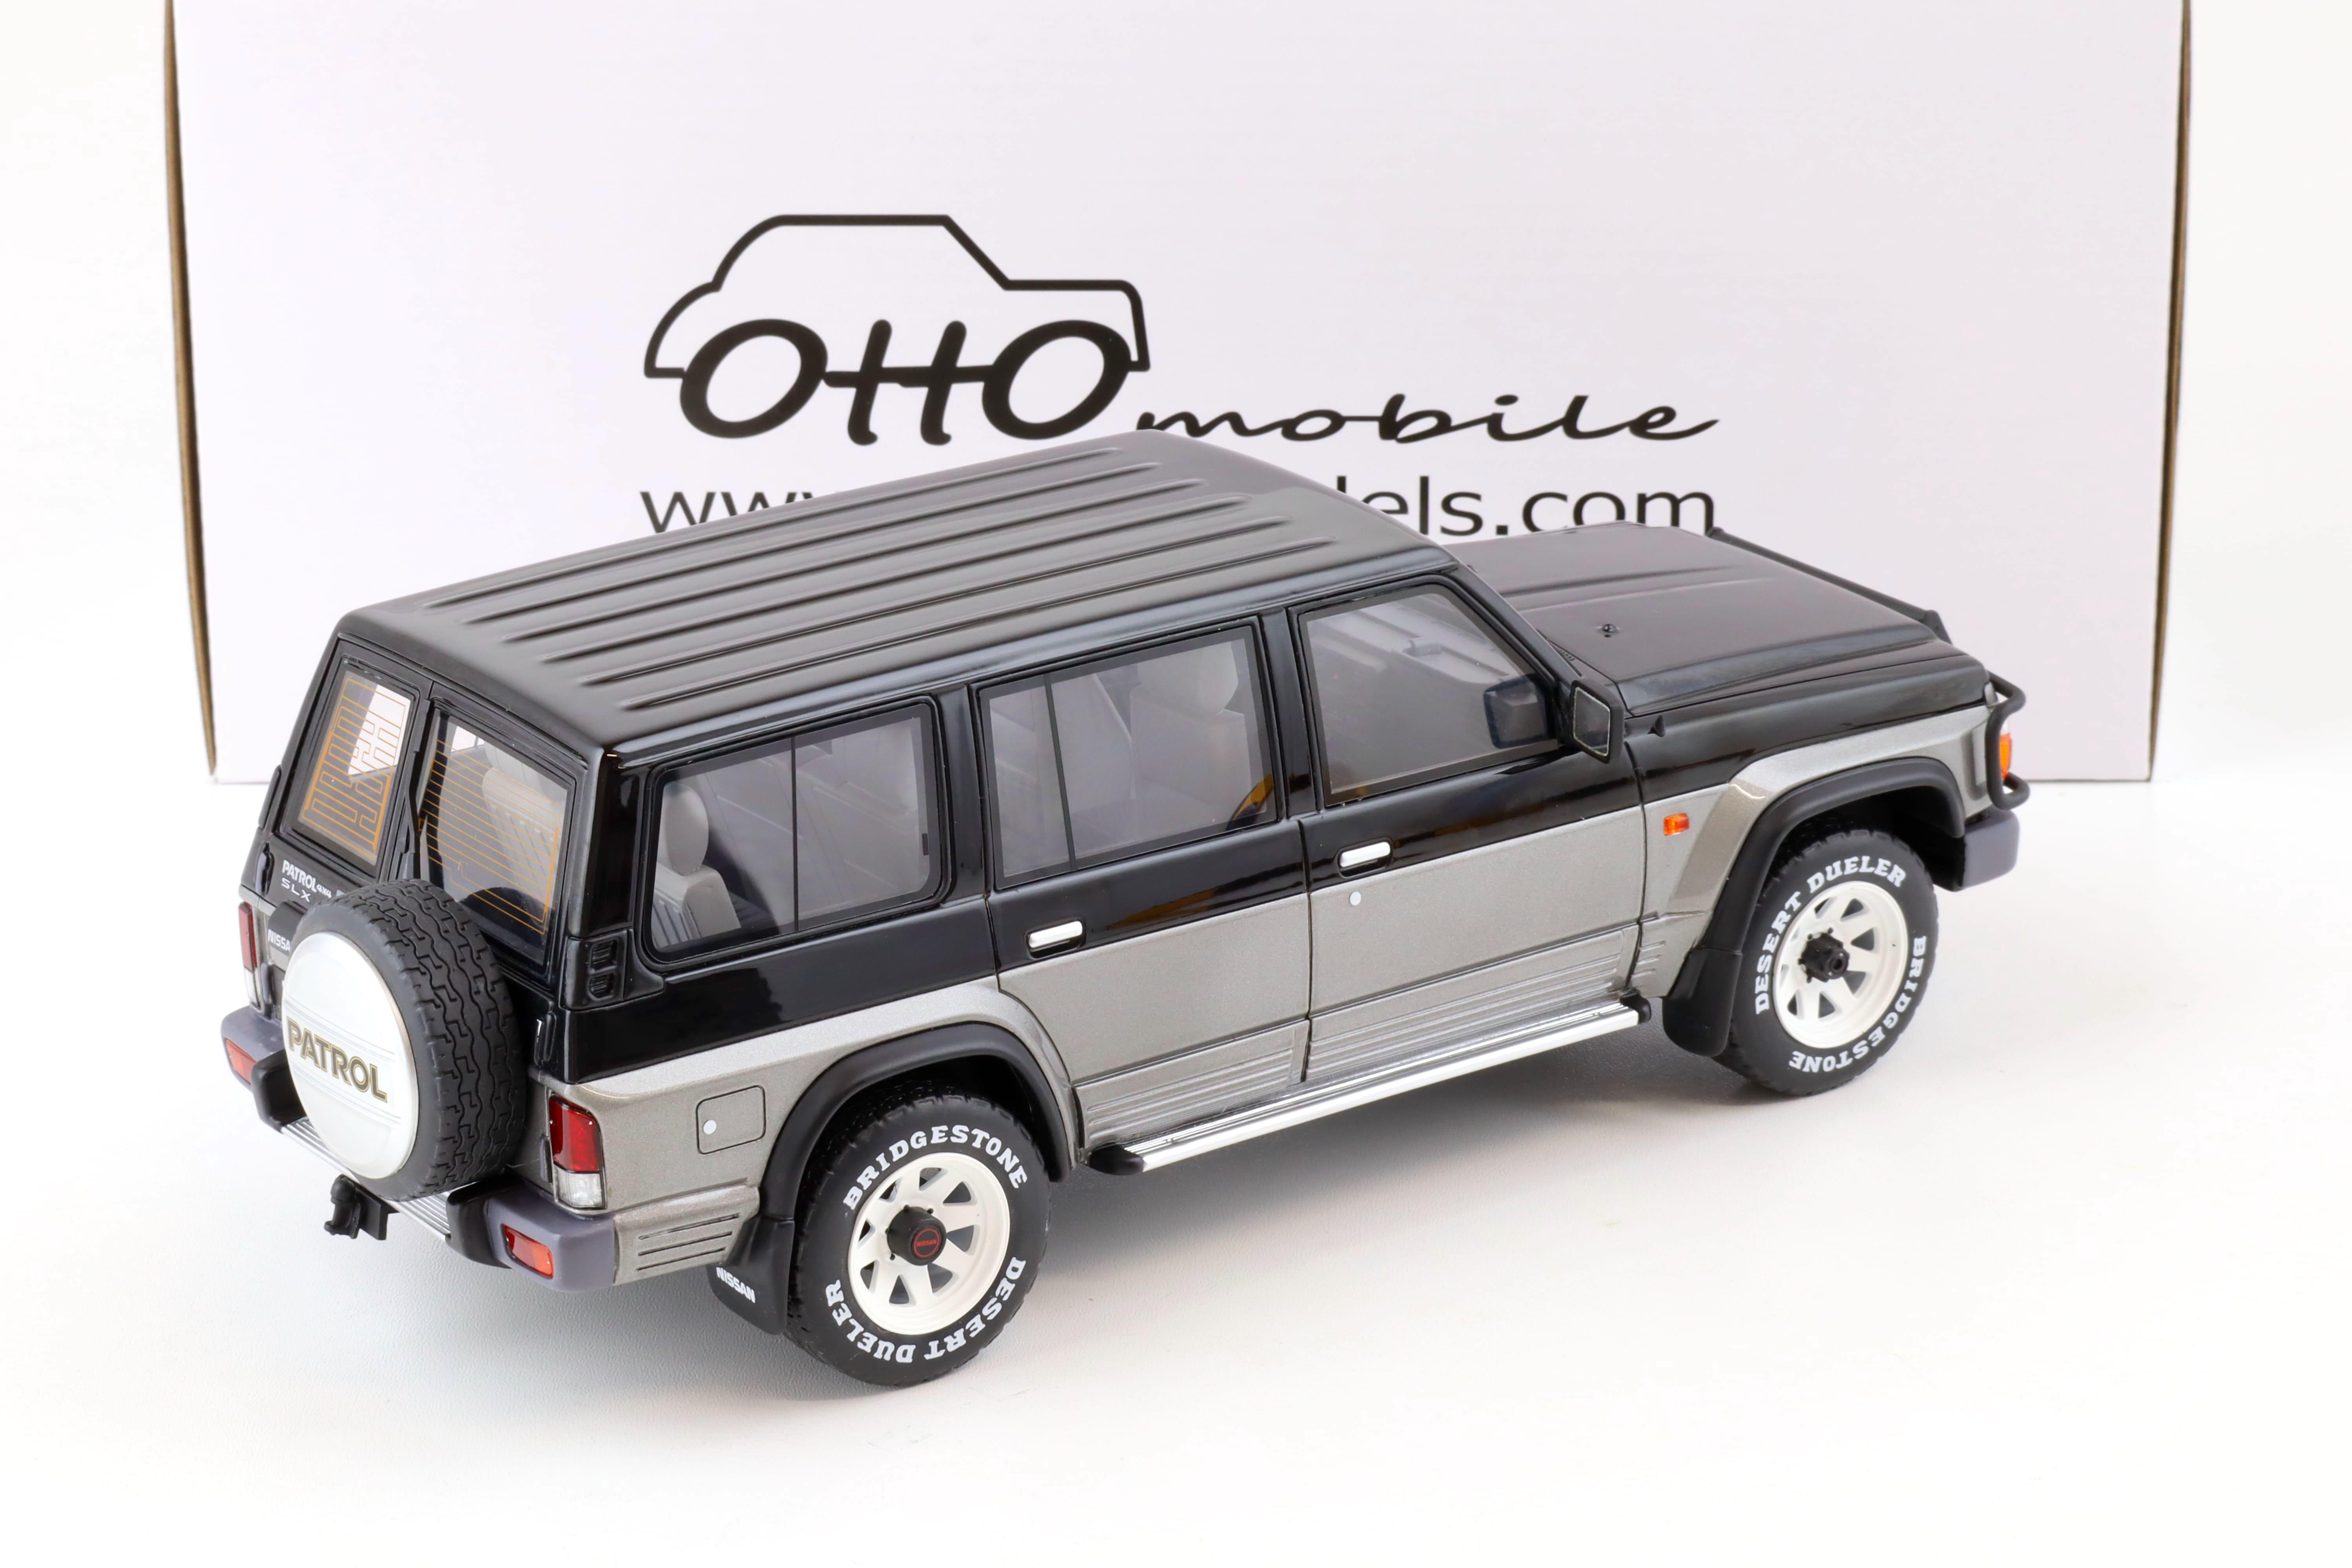 1:18 OTTO mobile OT993 Nissan Patrol GR Y60 grey/ black 1992